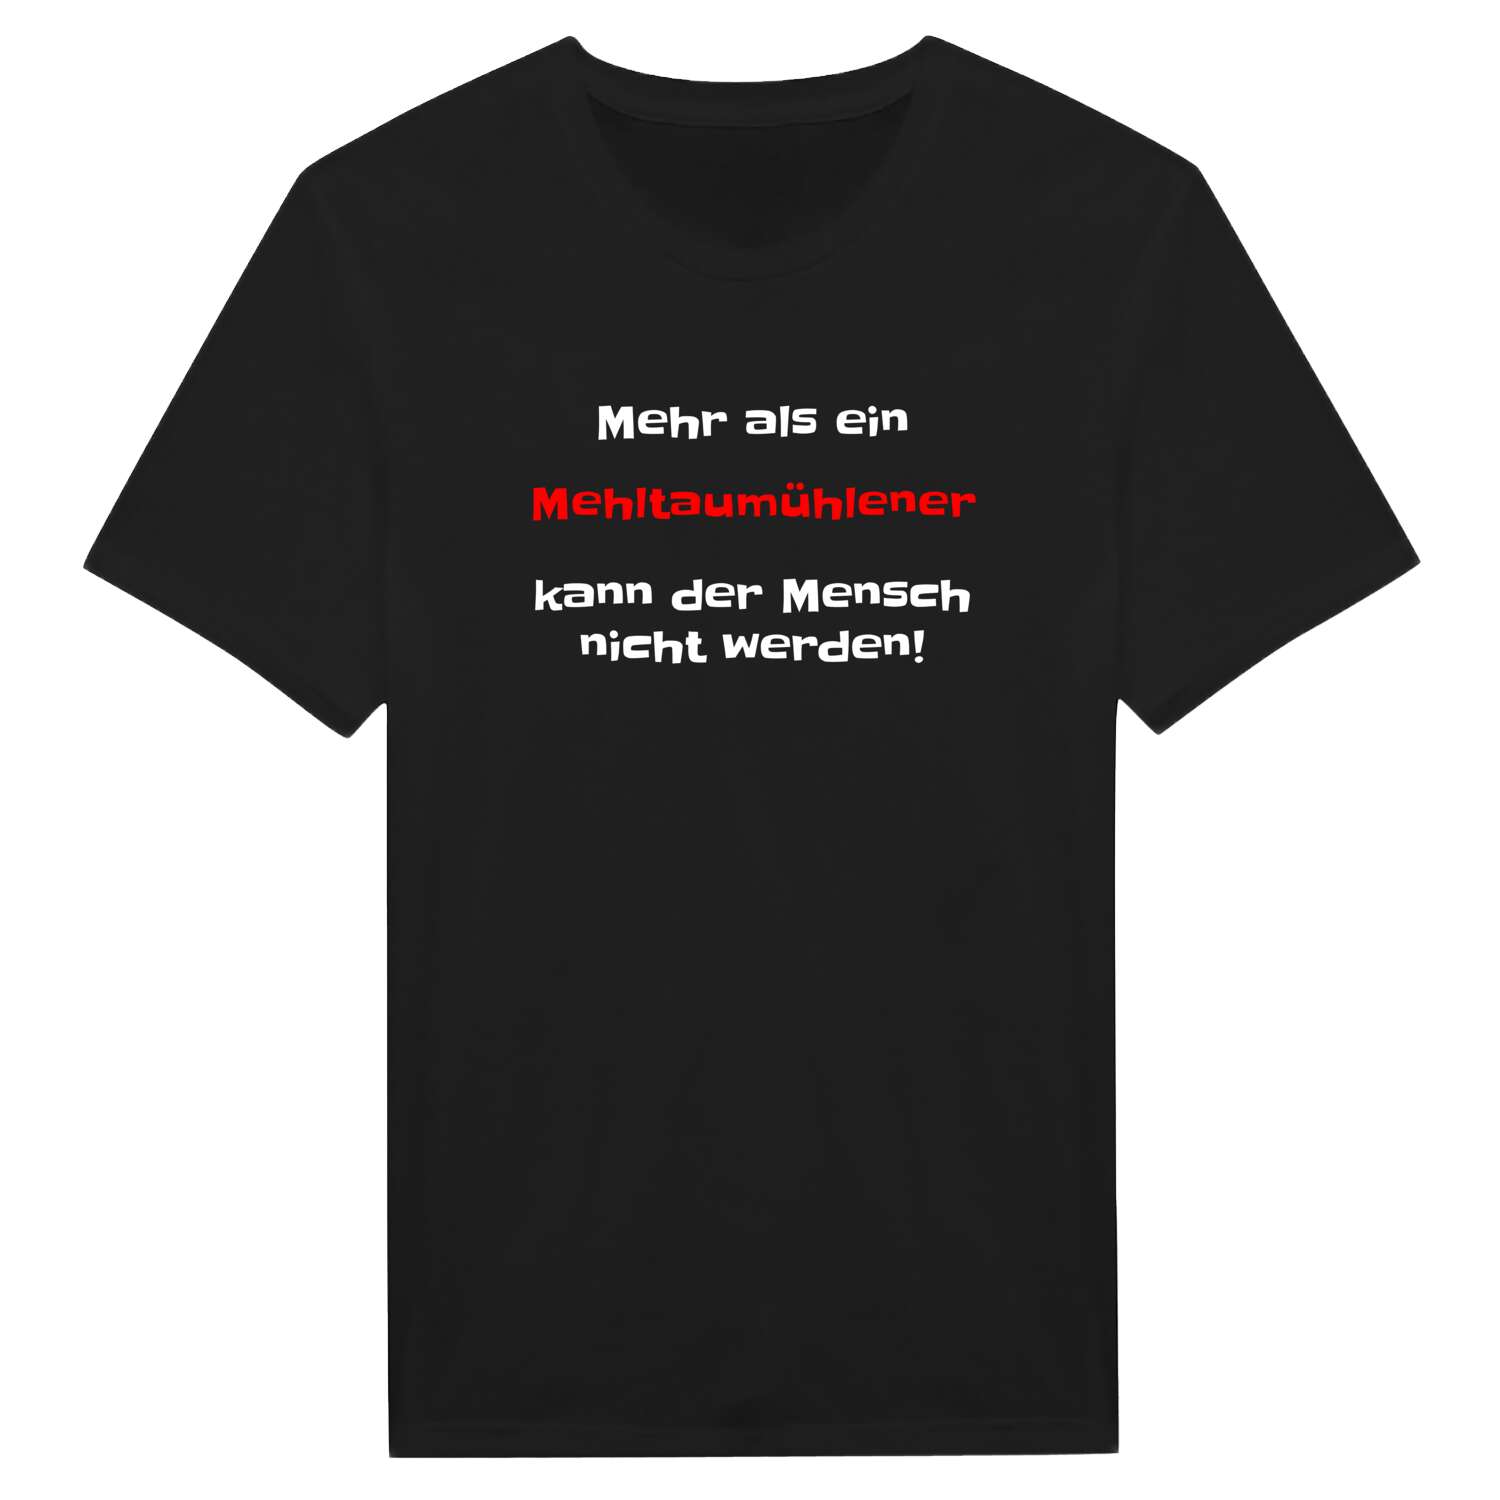 Mehltaumühle T-Shirt »Mehr als ein«